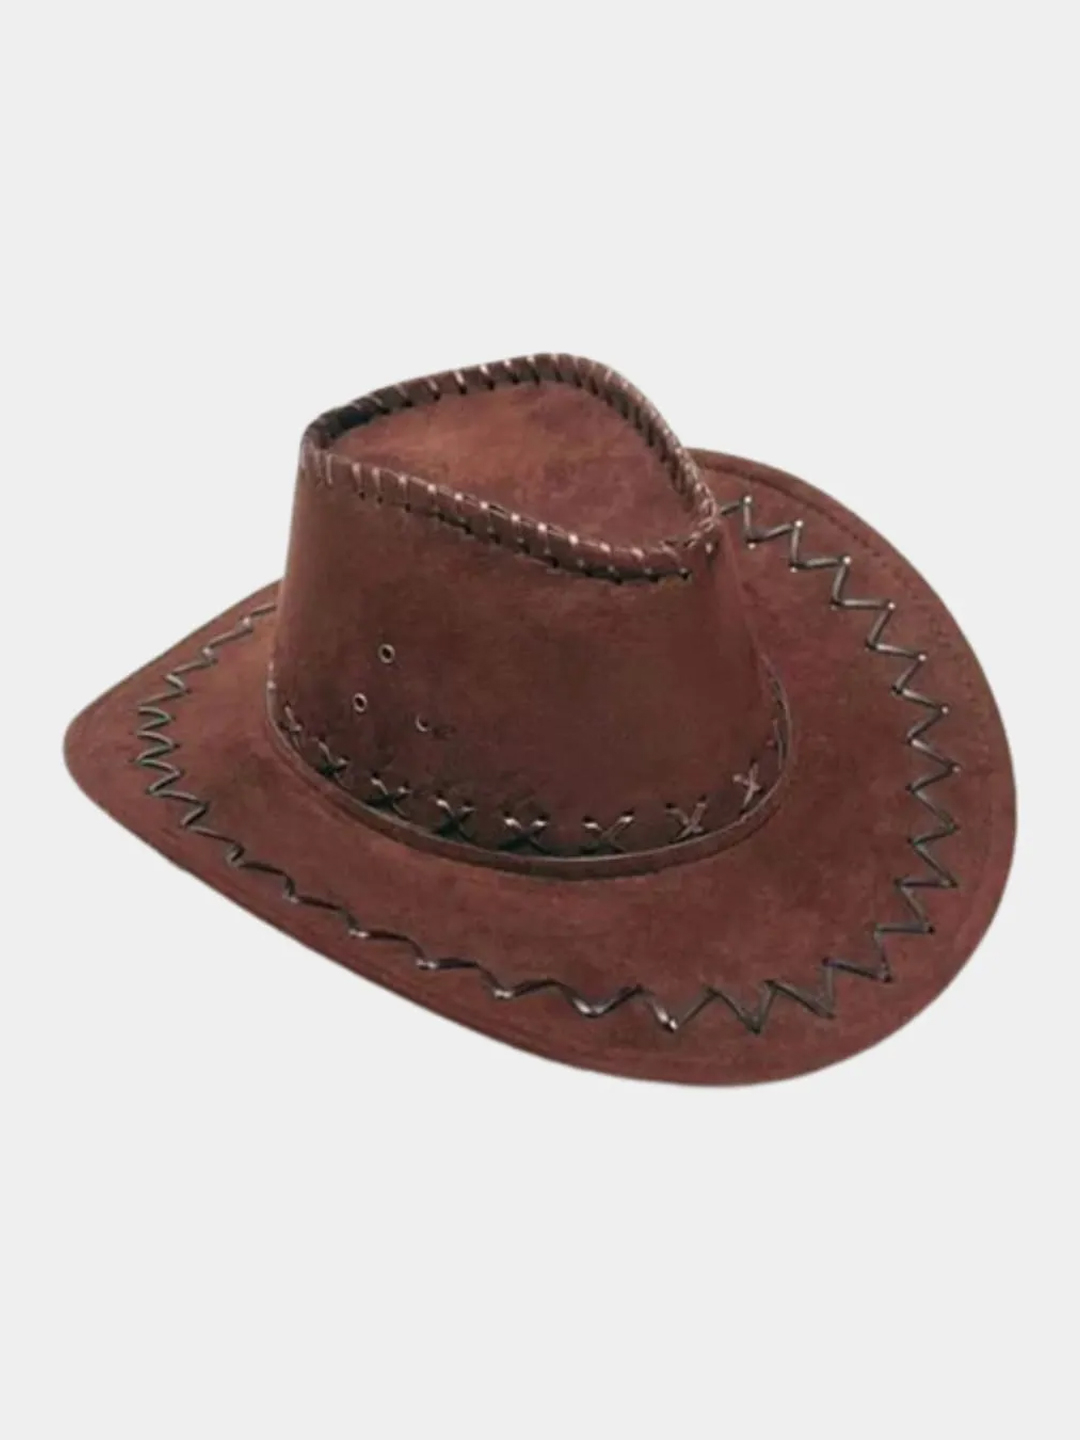 Ковбойская шляпа. Шапка ковбоя. Шляпа коричневая мужская. Сувенир из Мексики шляпа. Каска защитная ковбойская шляпа